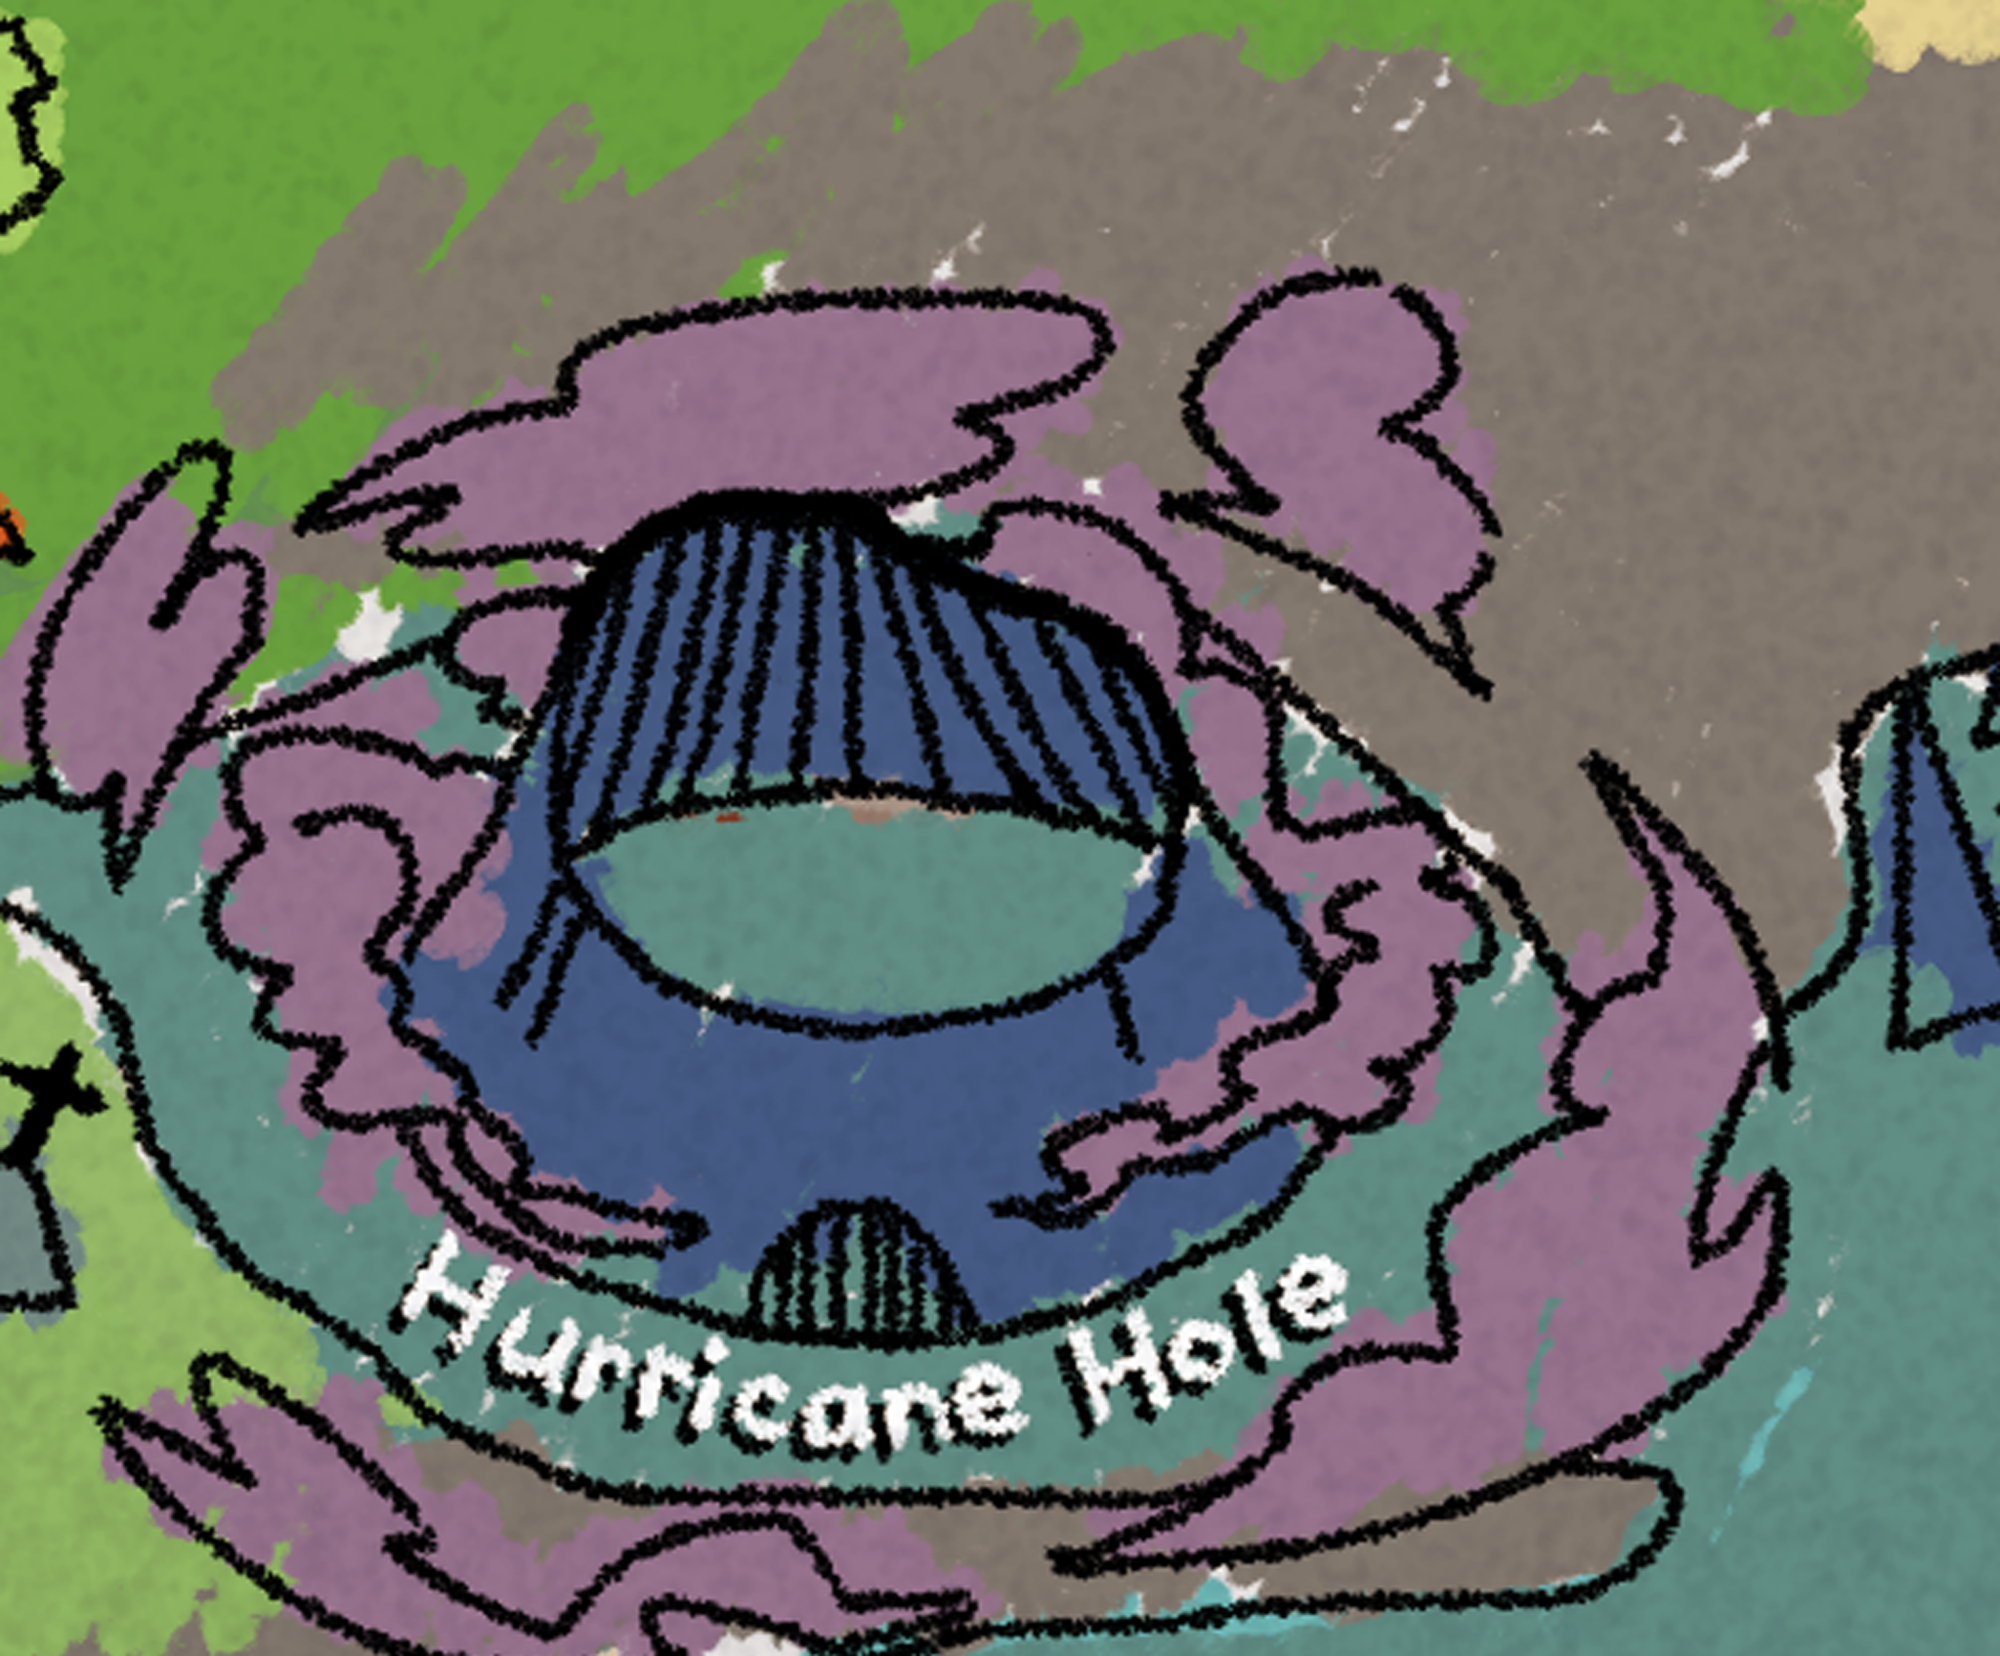 A hurricane hole